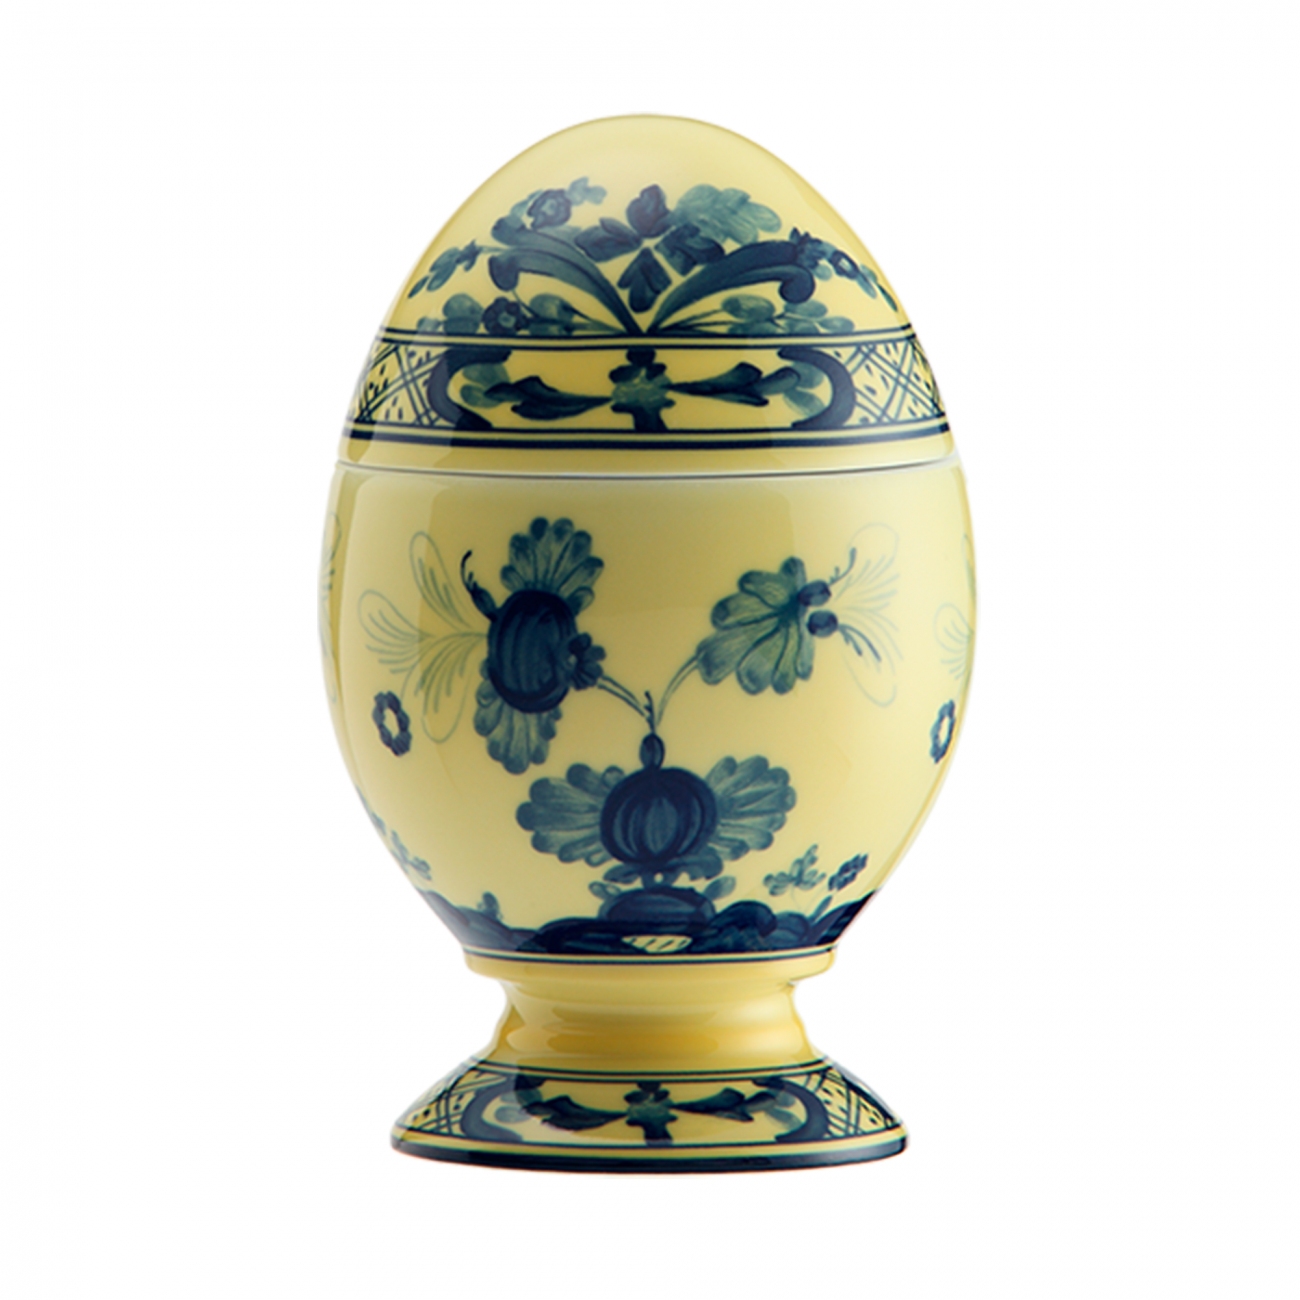 Ginori 1735 Oriente Italiano Egg with cover